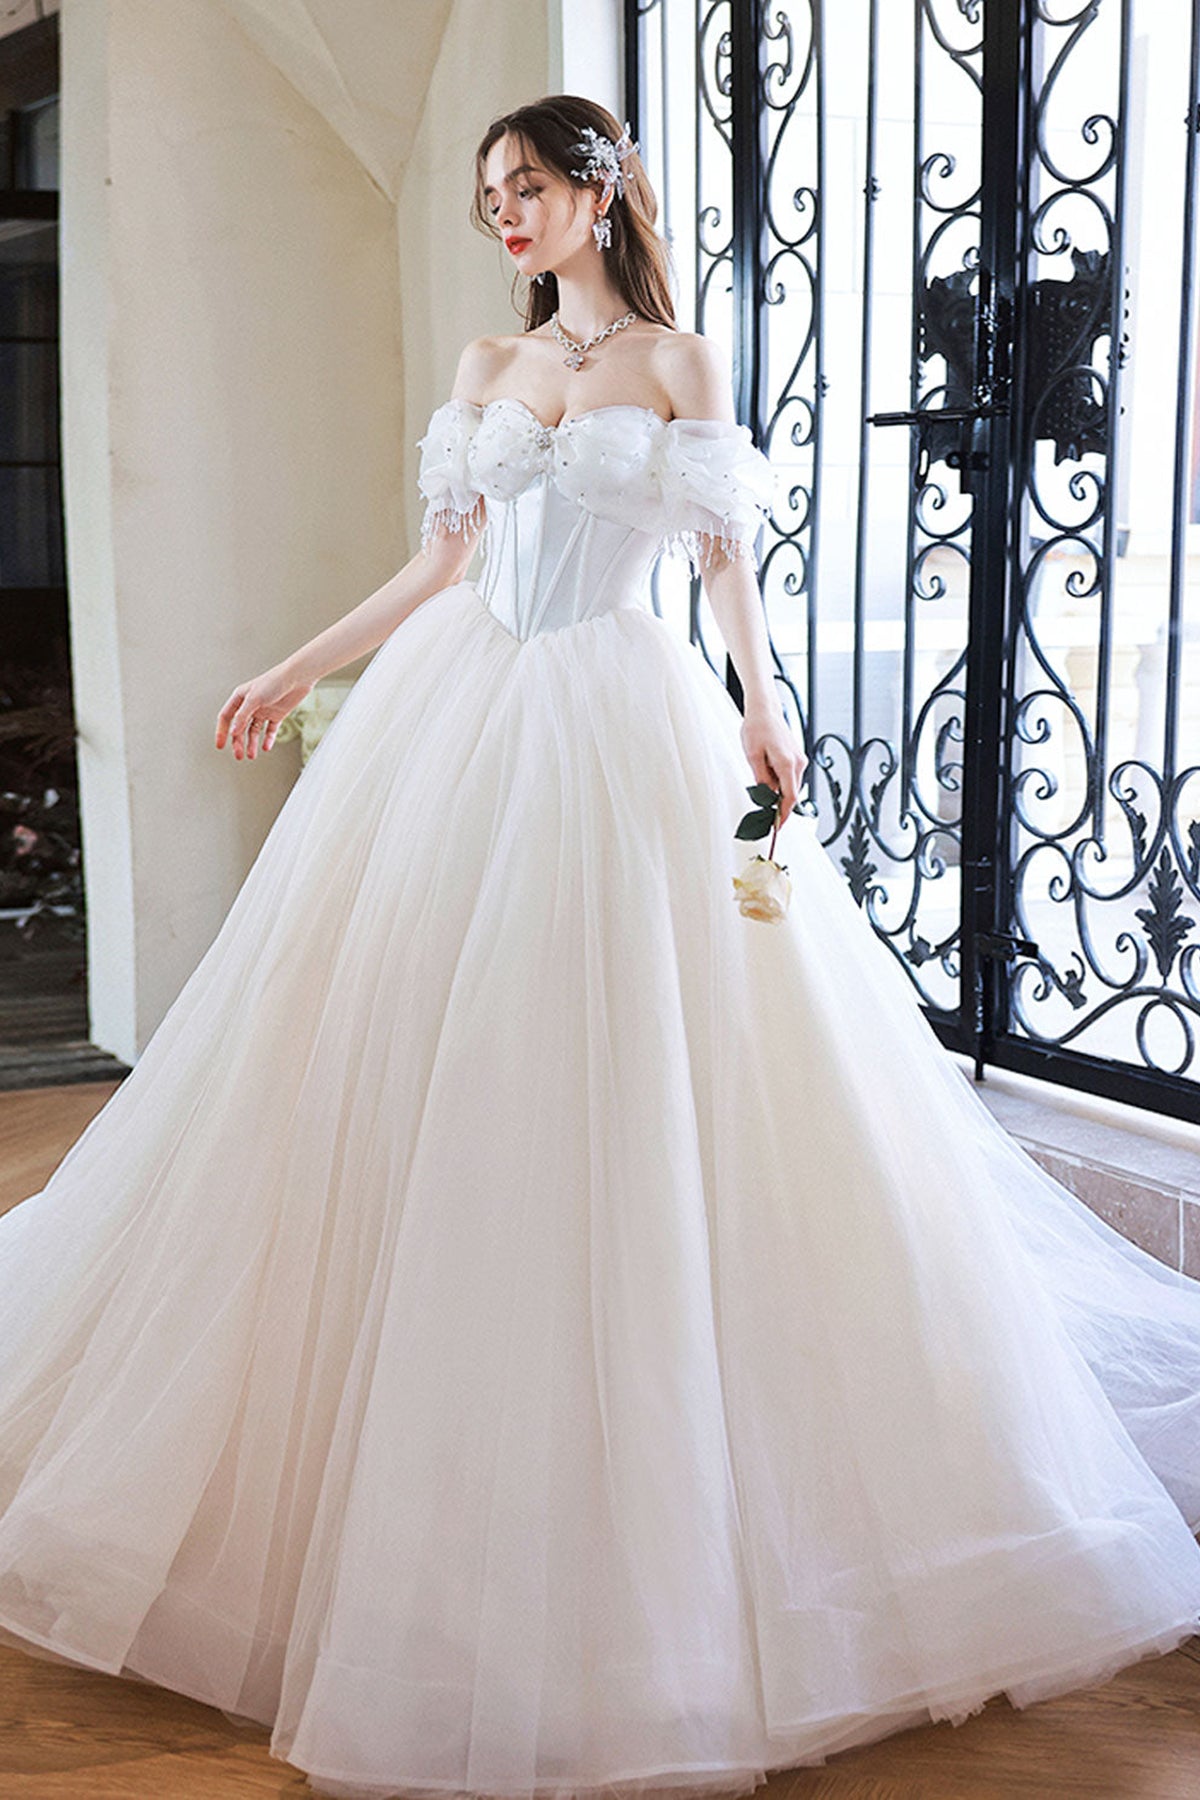 Elegant White Tulle Long Prom Dress White Tulle Evening Dress